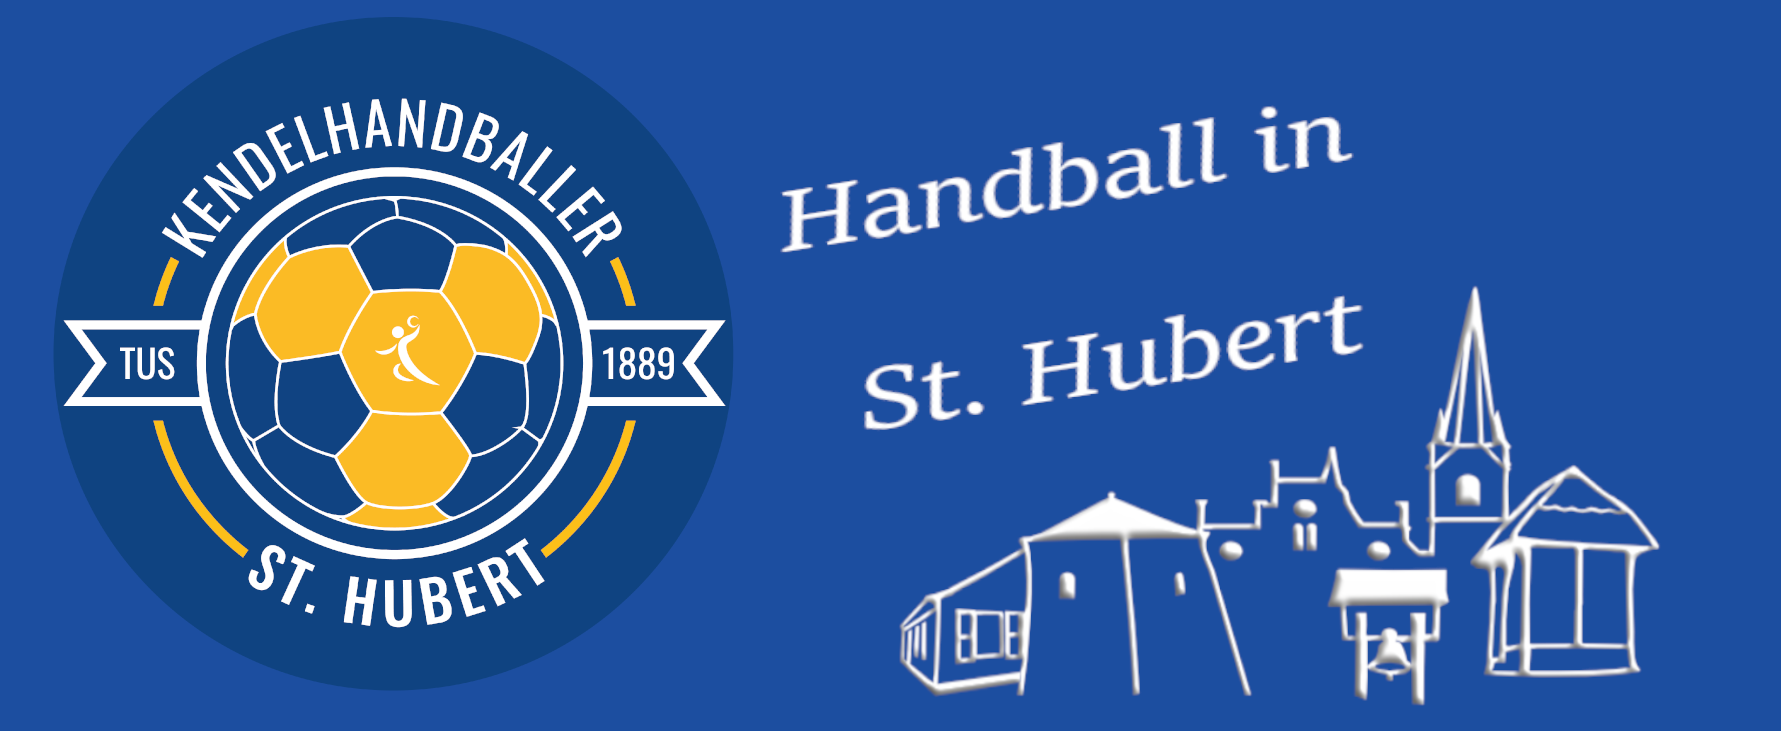 (c) Handball-in-st-hubert.de